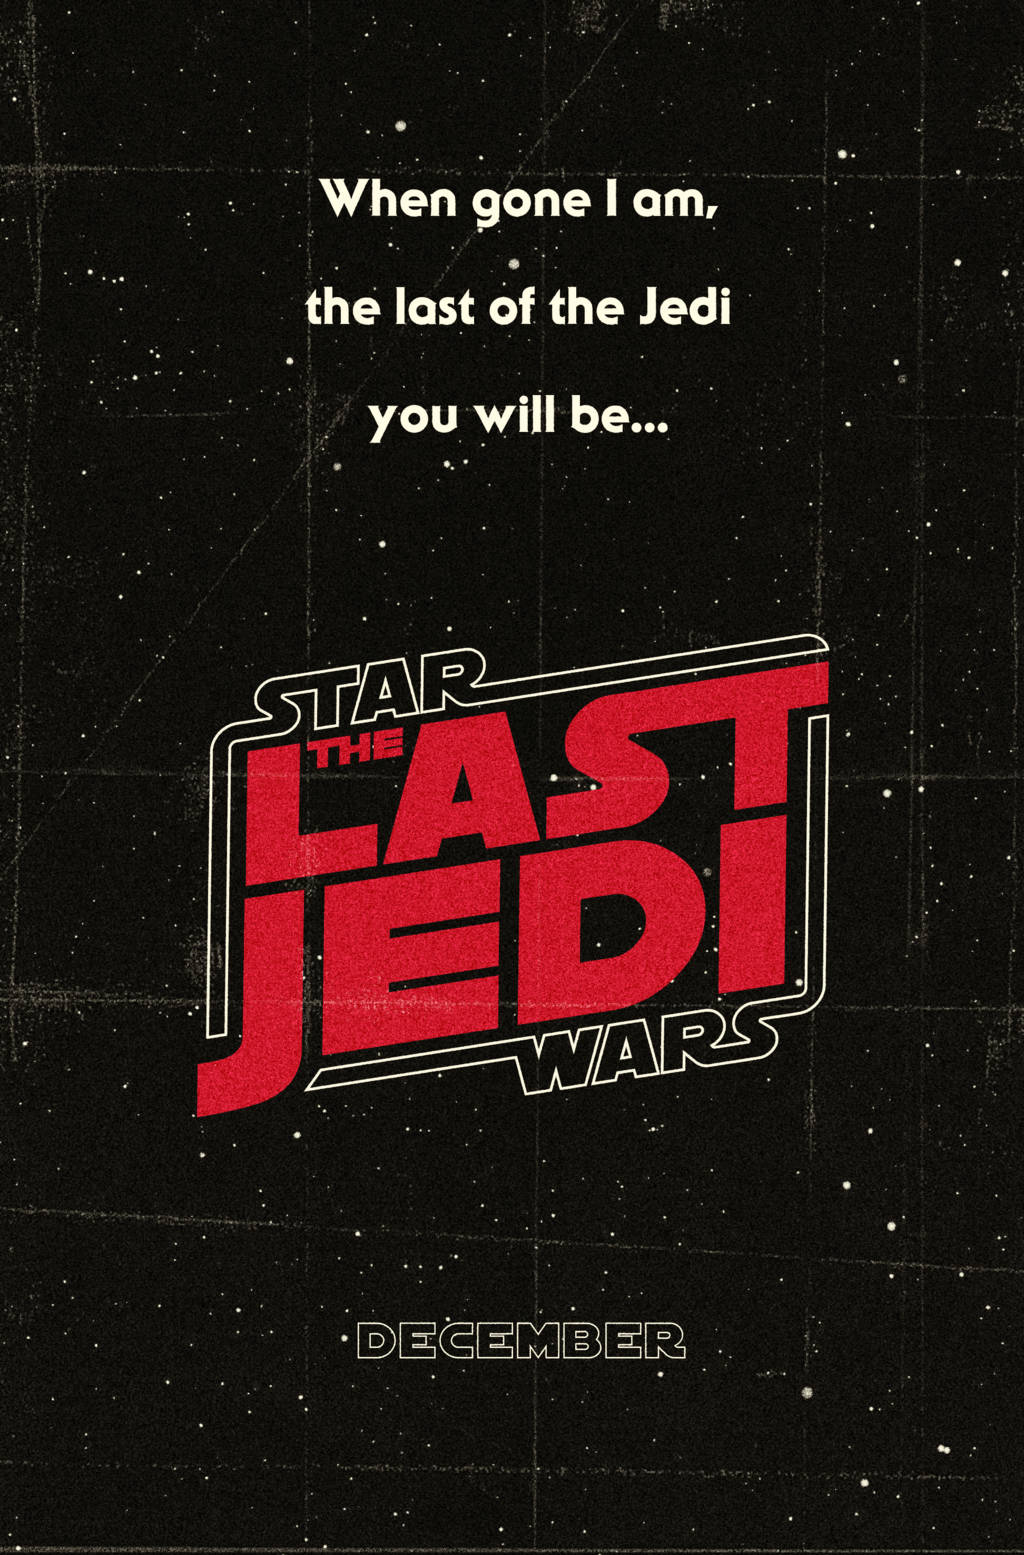 The Last Jedi Star Wars Quote Wallpaper